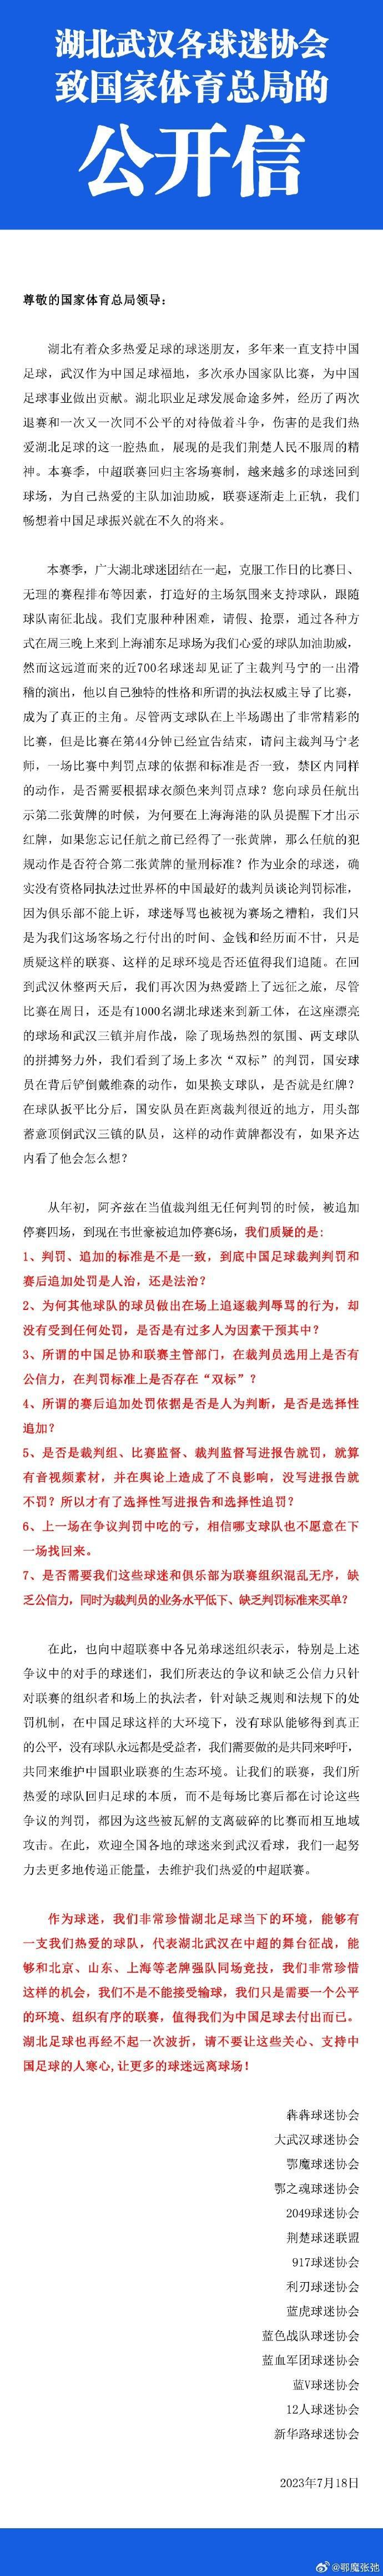 谢晖在微博上吐槽裁判；

南通支云老板范兵炮轰足协为小丑；

山东球迷协会、武汉